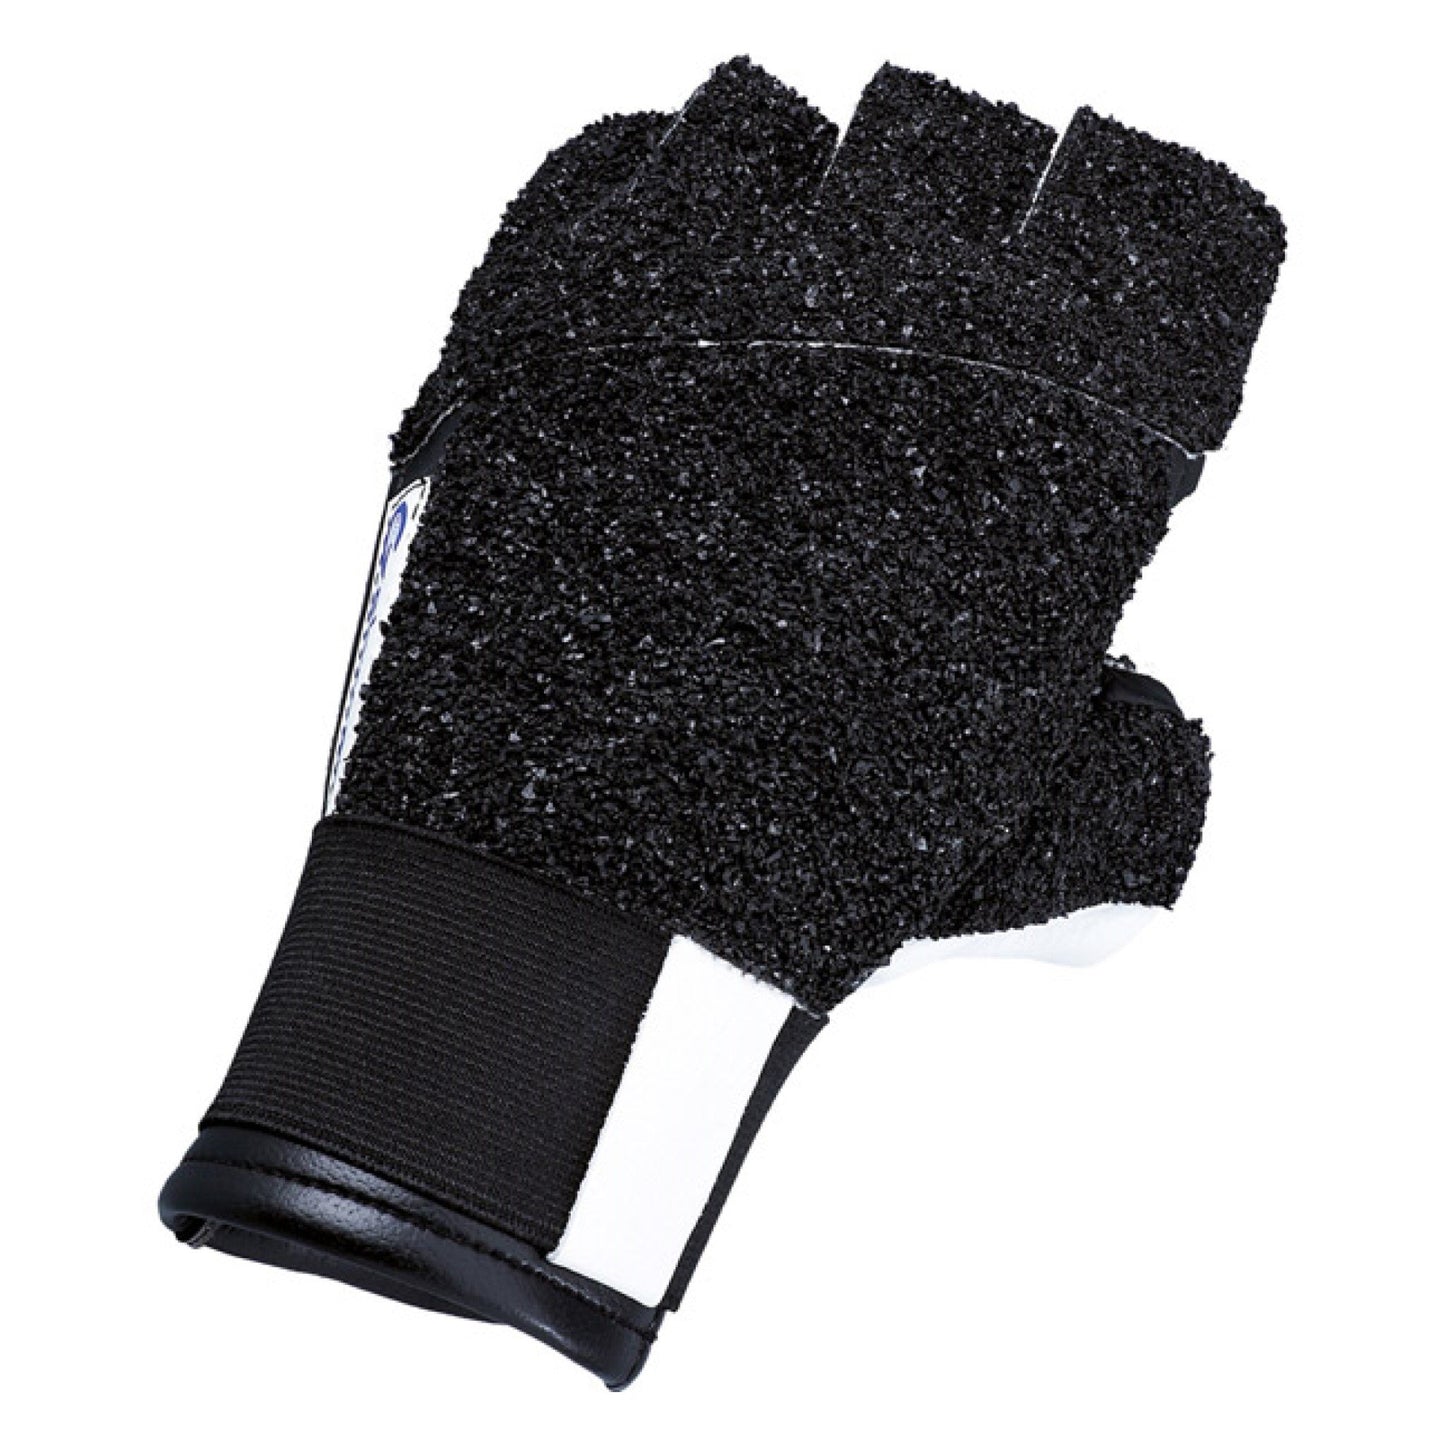 Gehmann 467 Glove